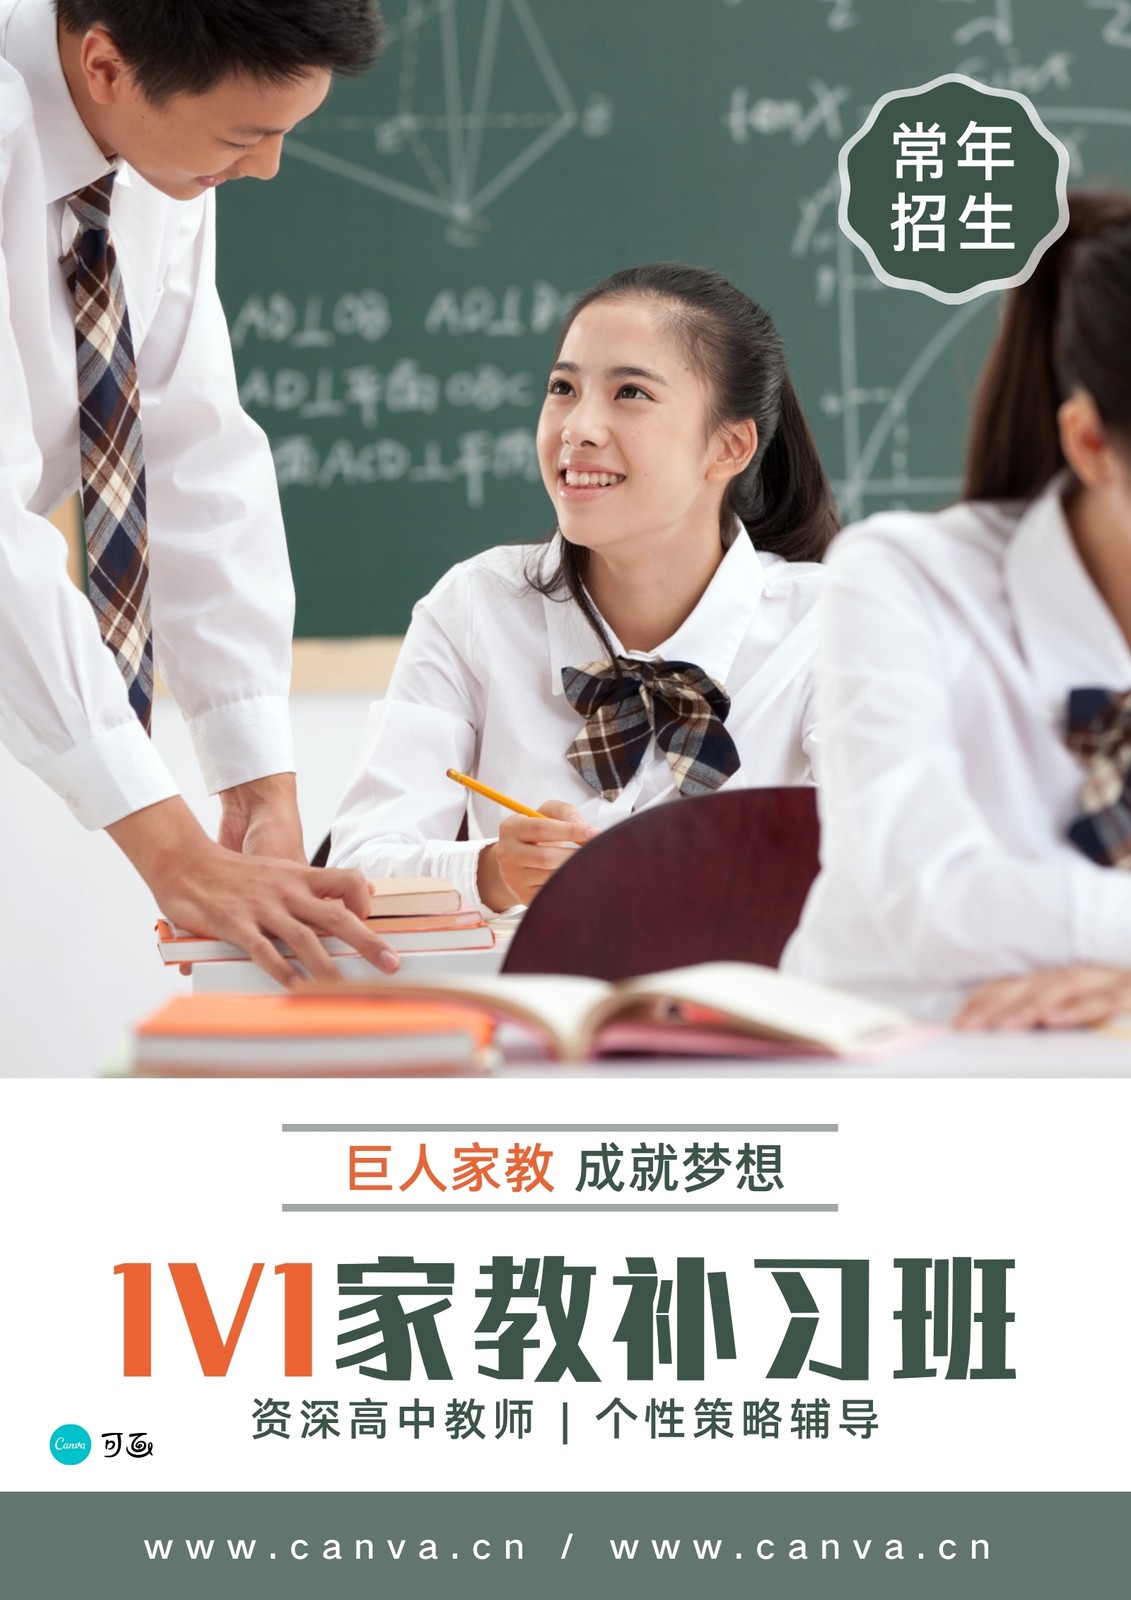 绿白色学生教室照片培训宣传中文海报